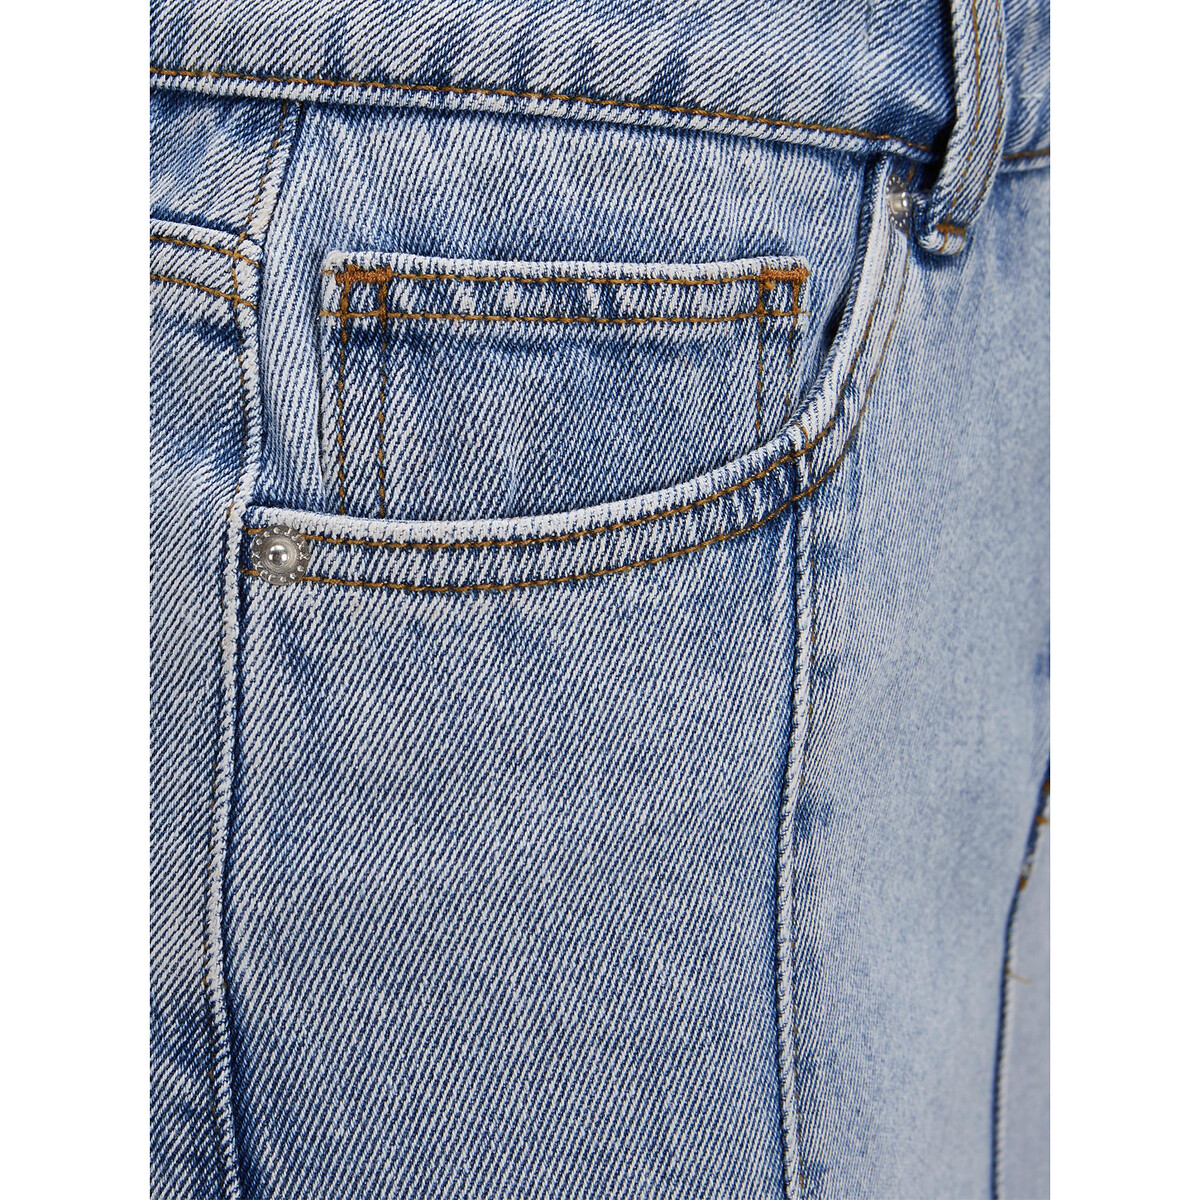 Юбка Короткая джинсовая высокий пояс S синий LaRedoute, размер S - фото 5